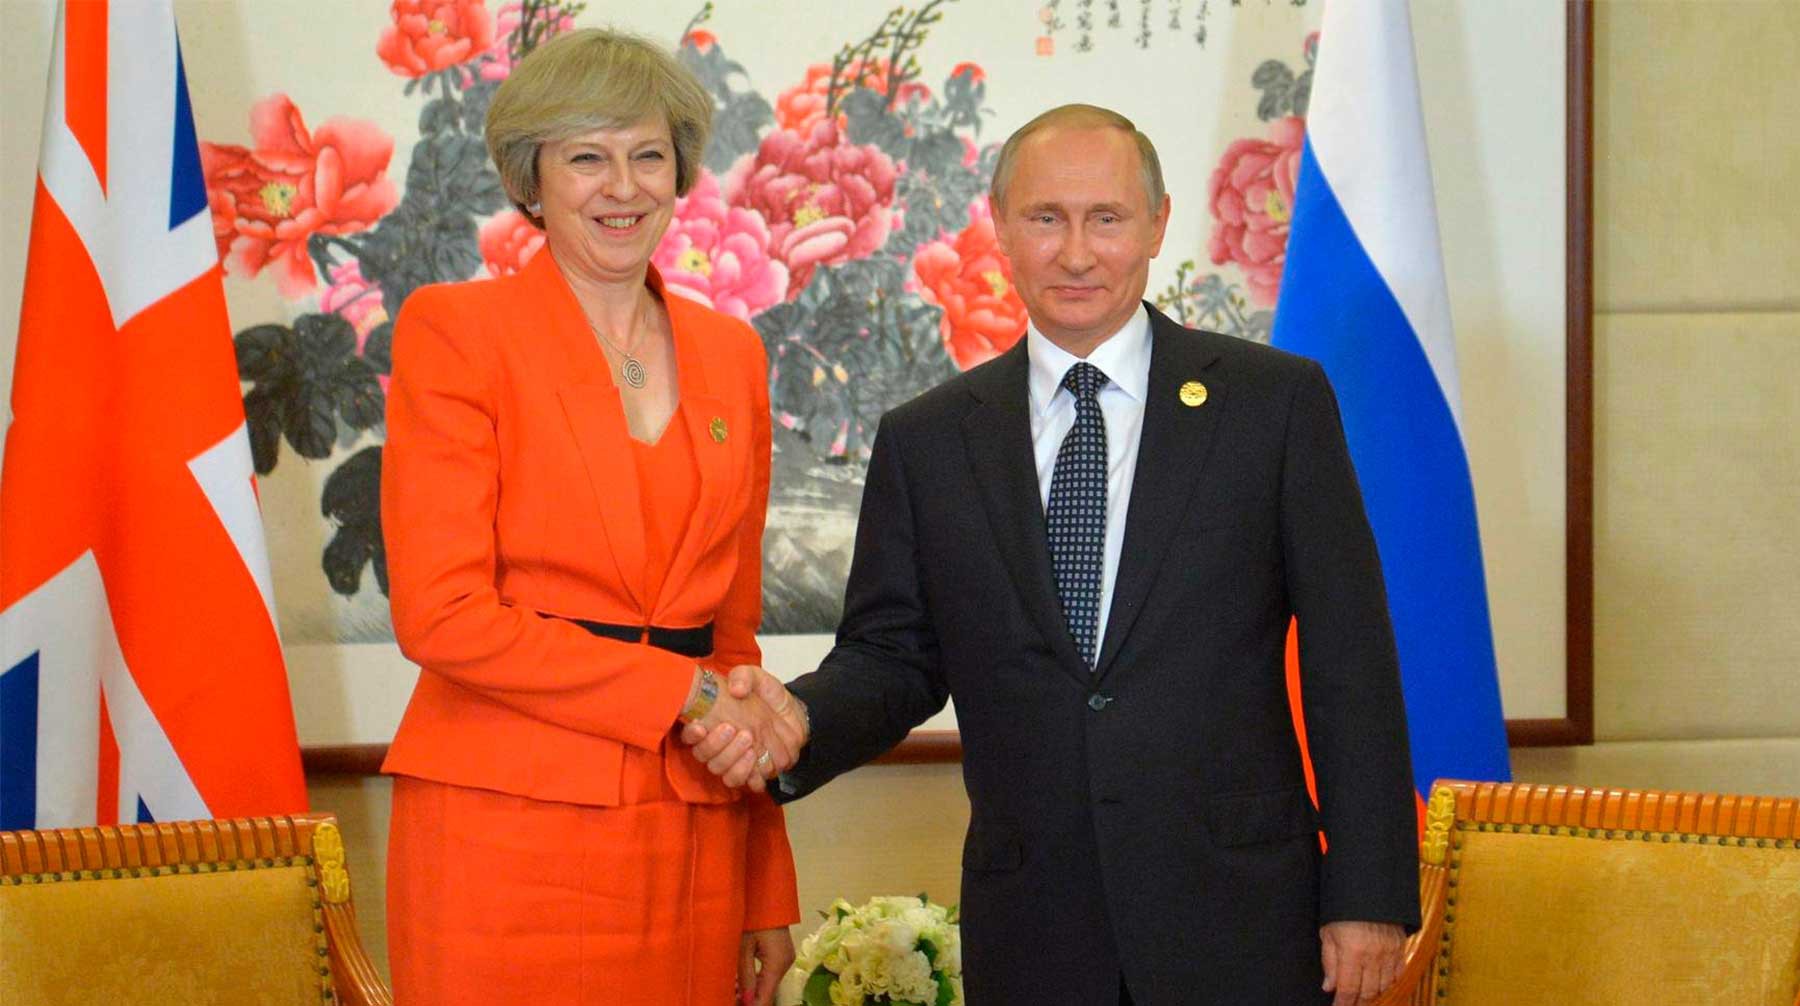 Dailystorm - Guardian: Лондон и Москва изучают возможности «разморозки» отношений